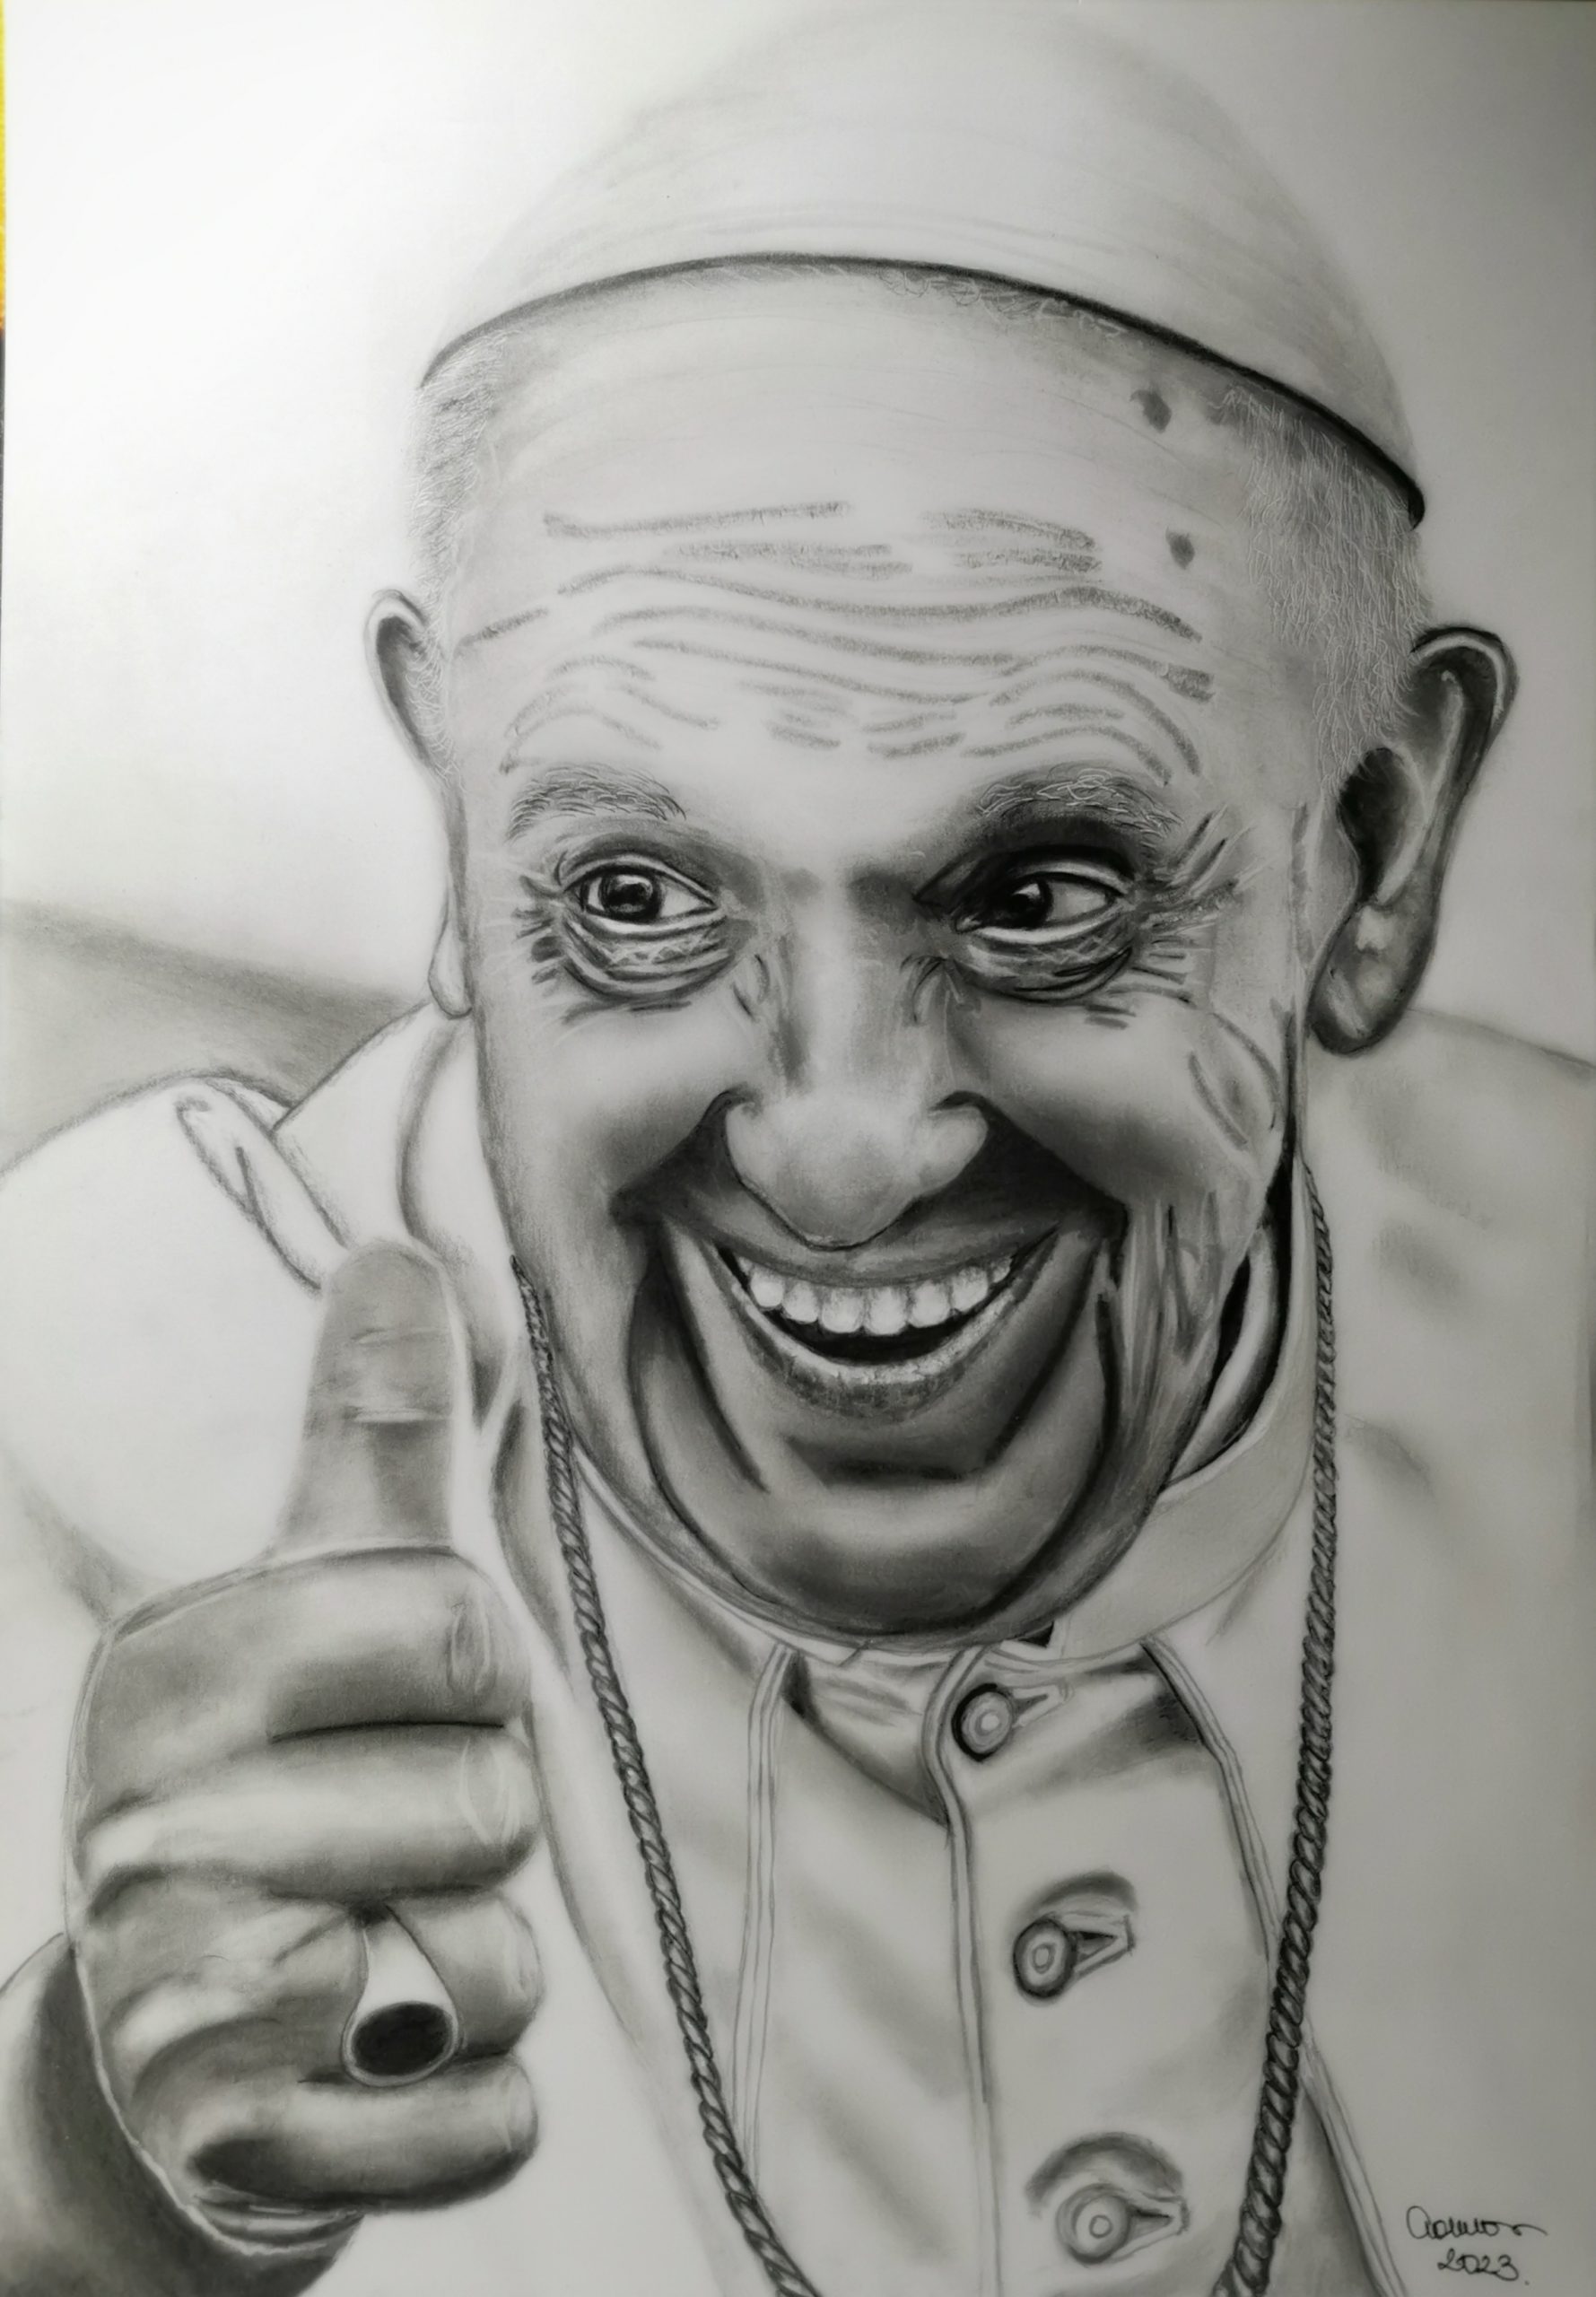 Ferenc pápa